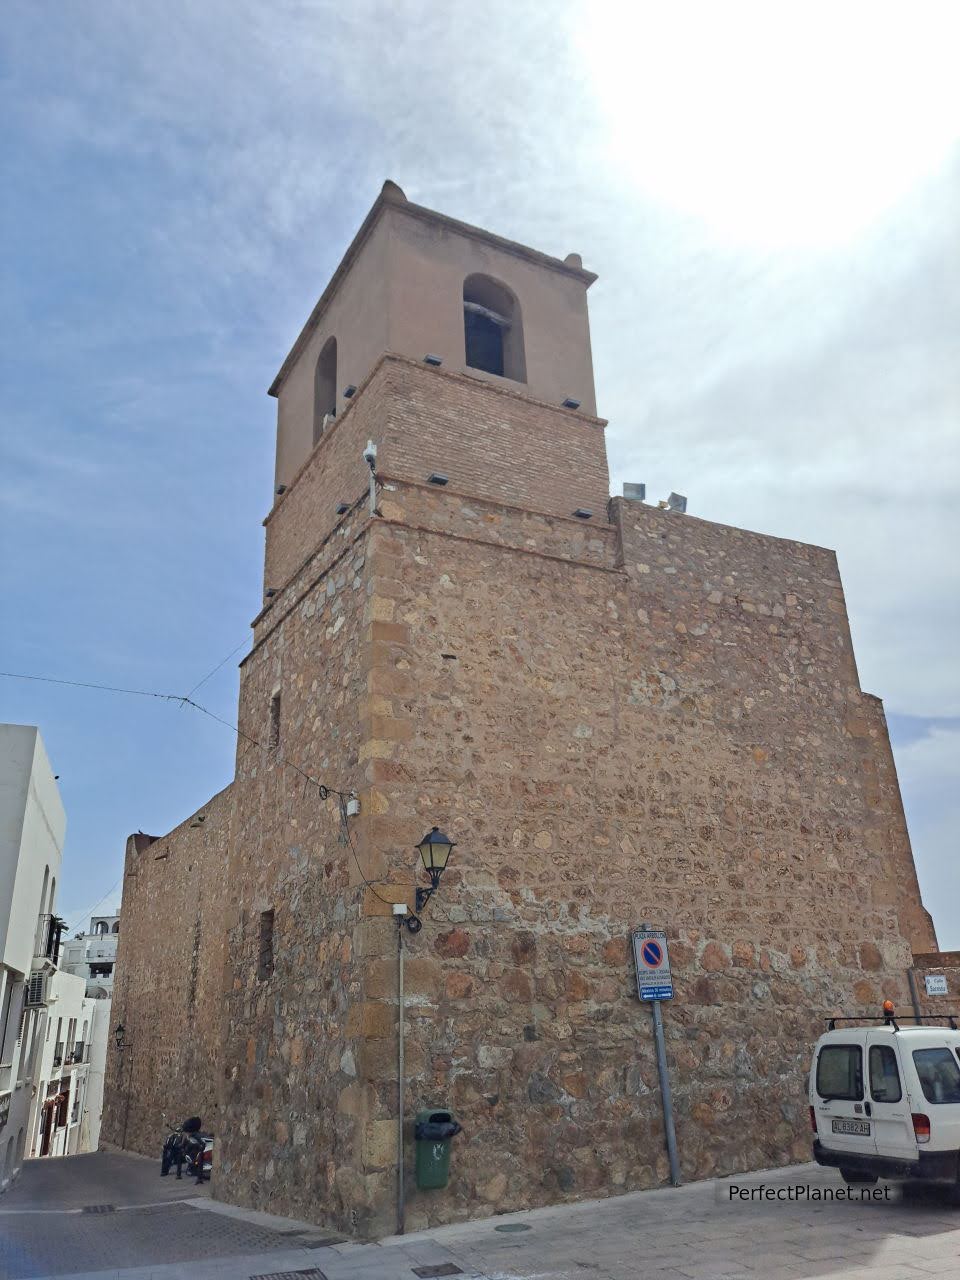 Santa María church